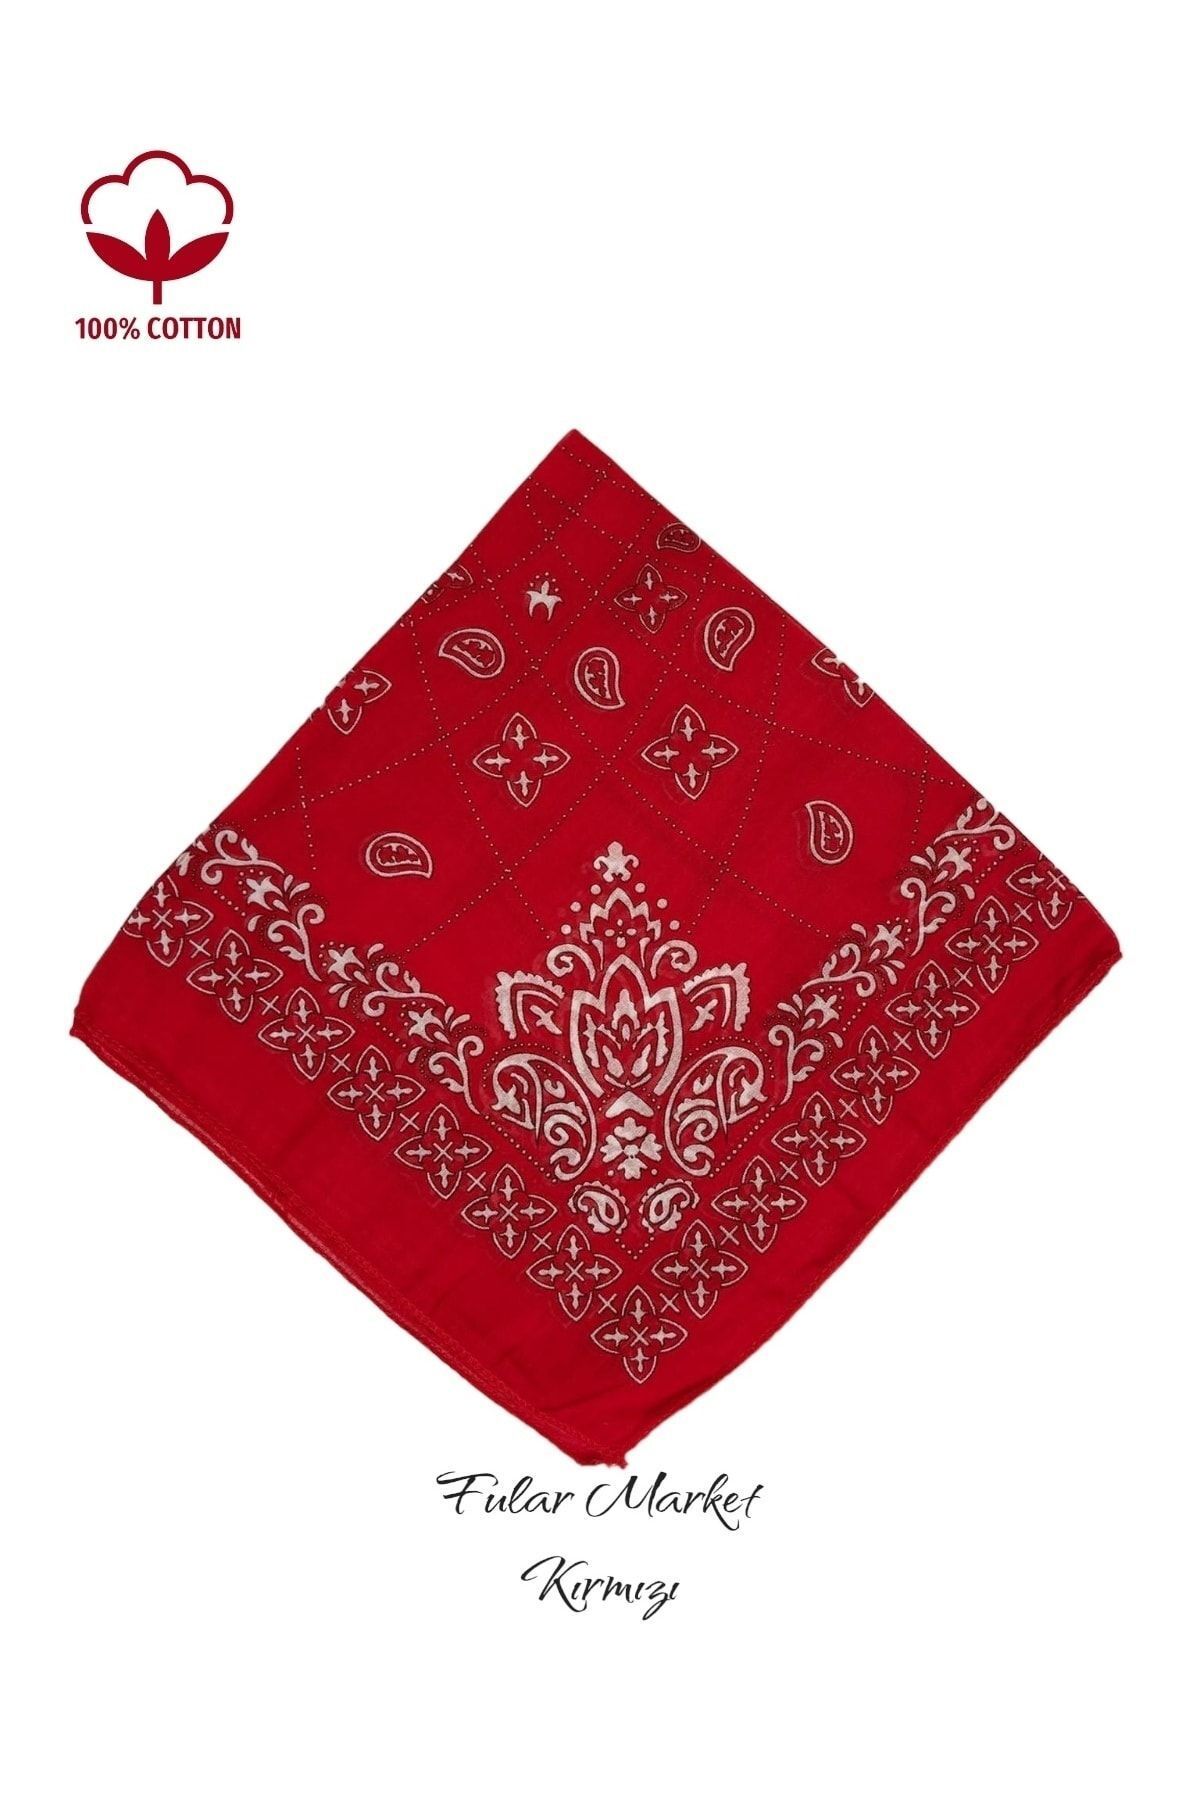 Fular Marketi %100 Pamuklu Elegance Desen Kırmızı Sepete 5 Adet Ekle 4 Adet Öde Kampanyalı 1 Adet Fiyatıdır